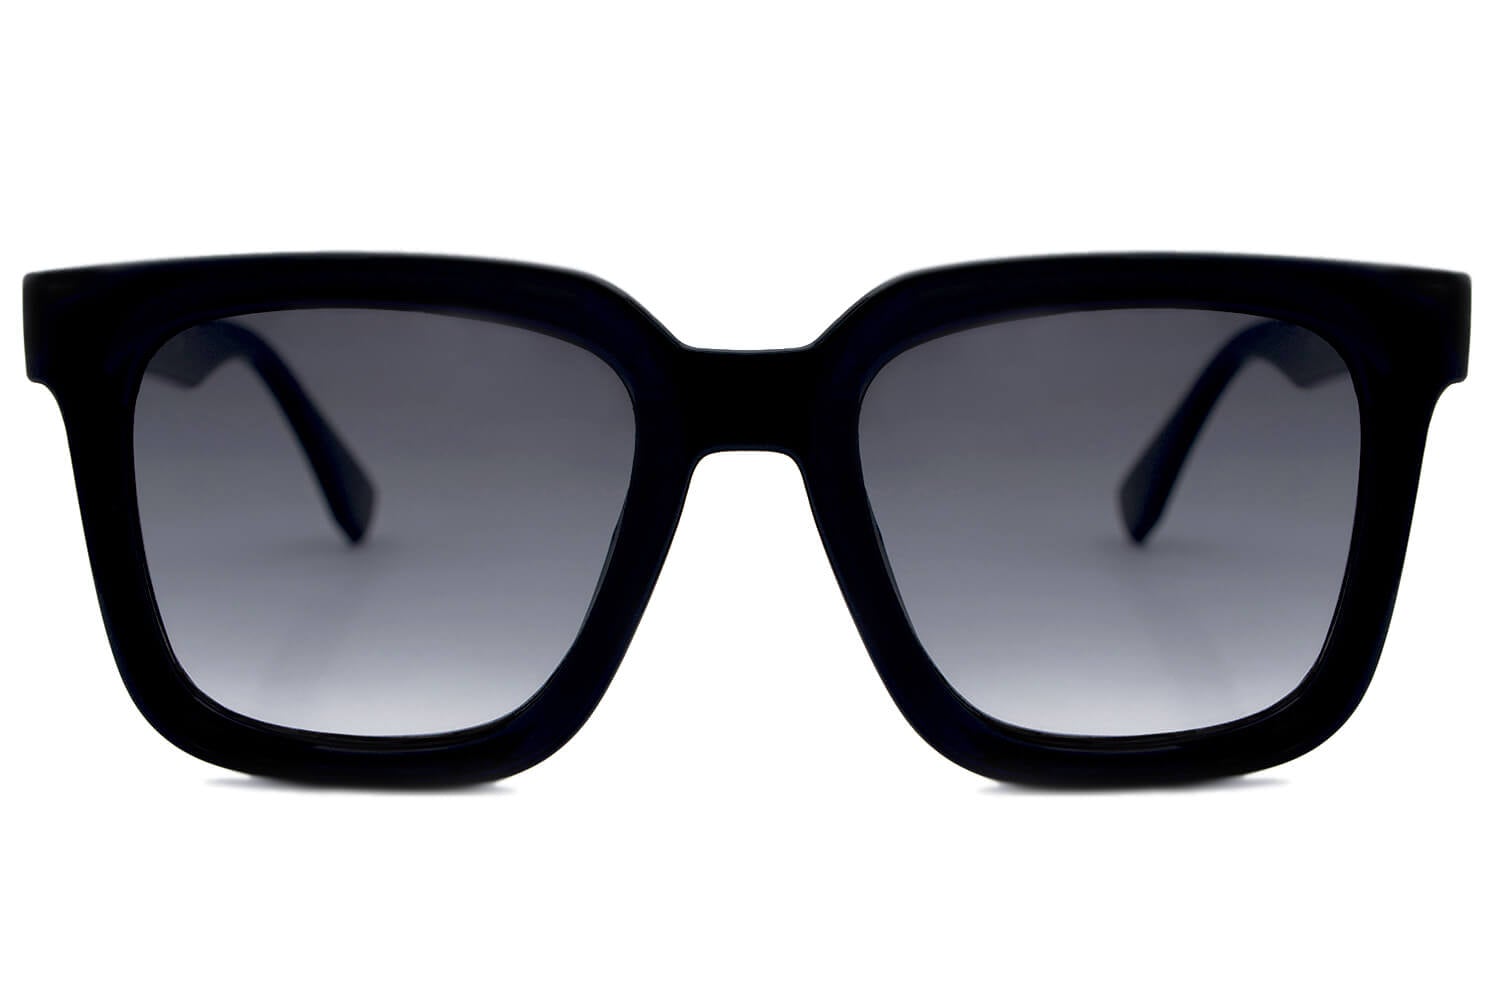 slette legemliggøre Luftfart Sorte solbriller | Priser fra 49 DKK | 5 stjerner på Trustpilot –  FashionZone DK